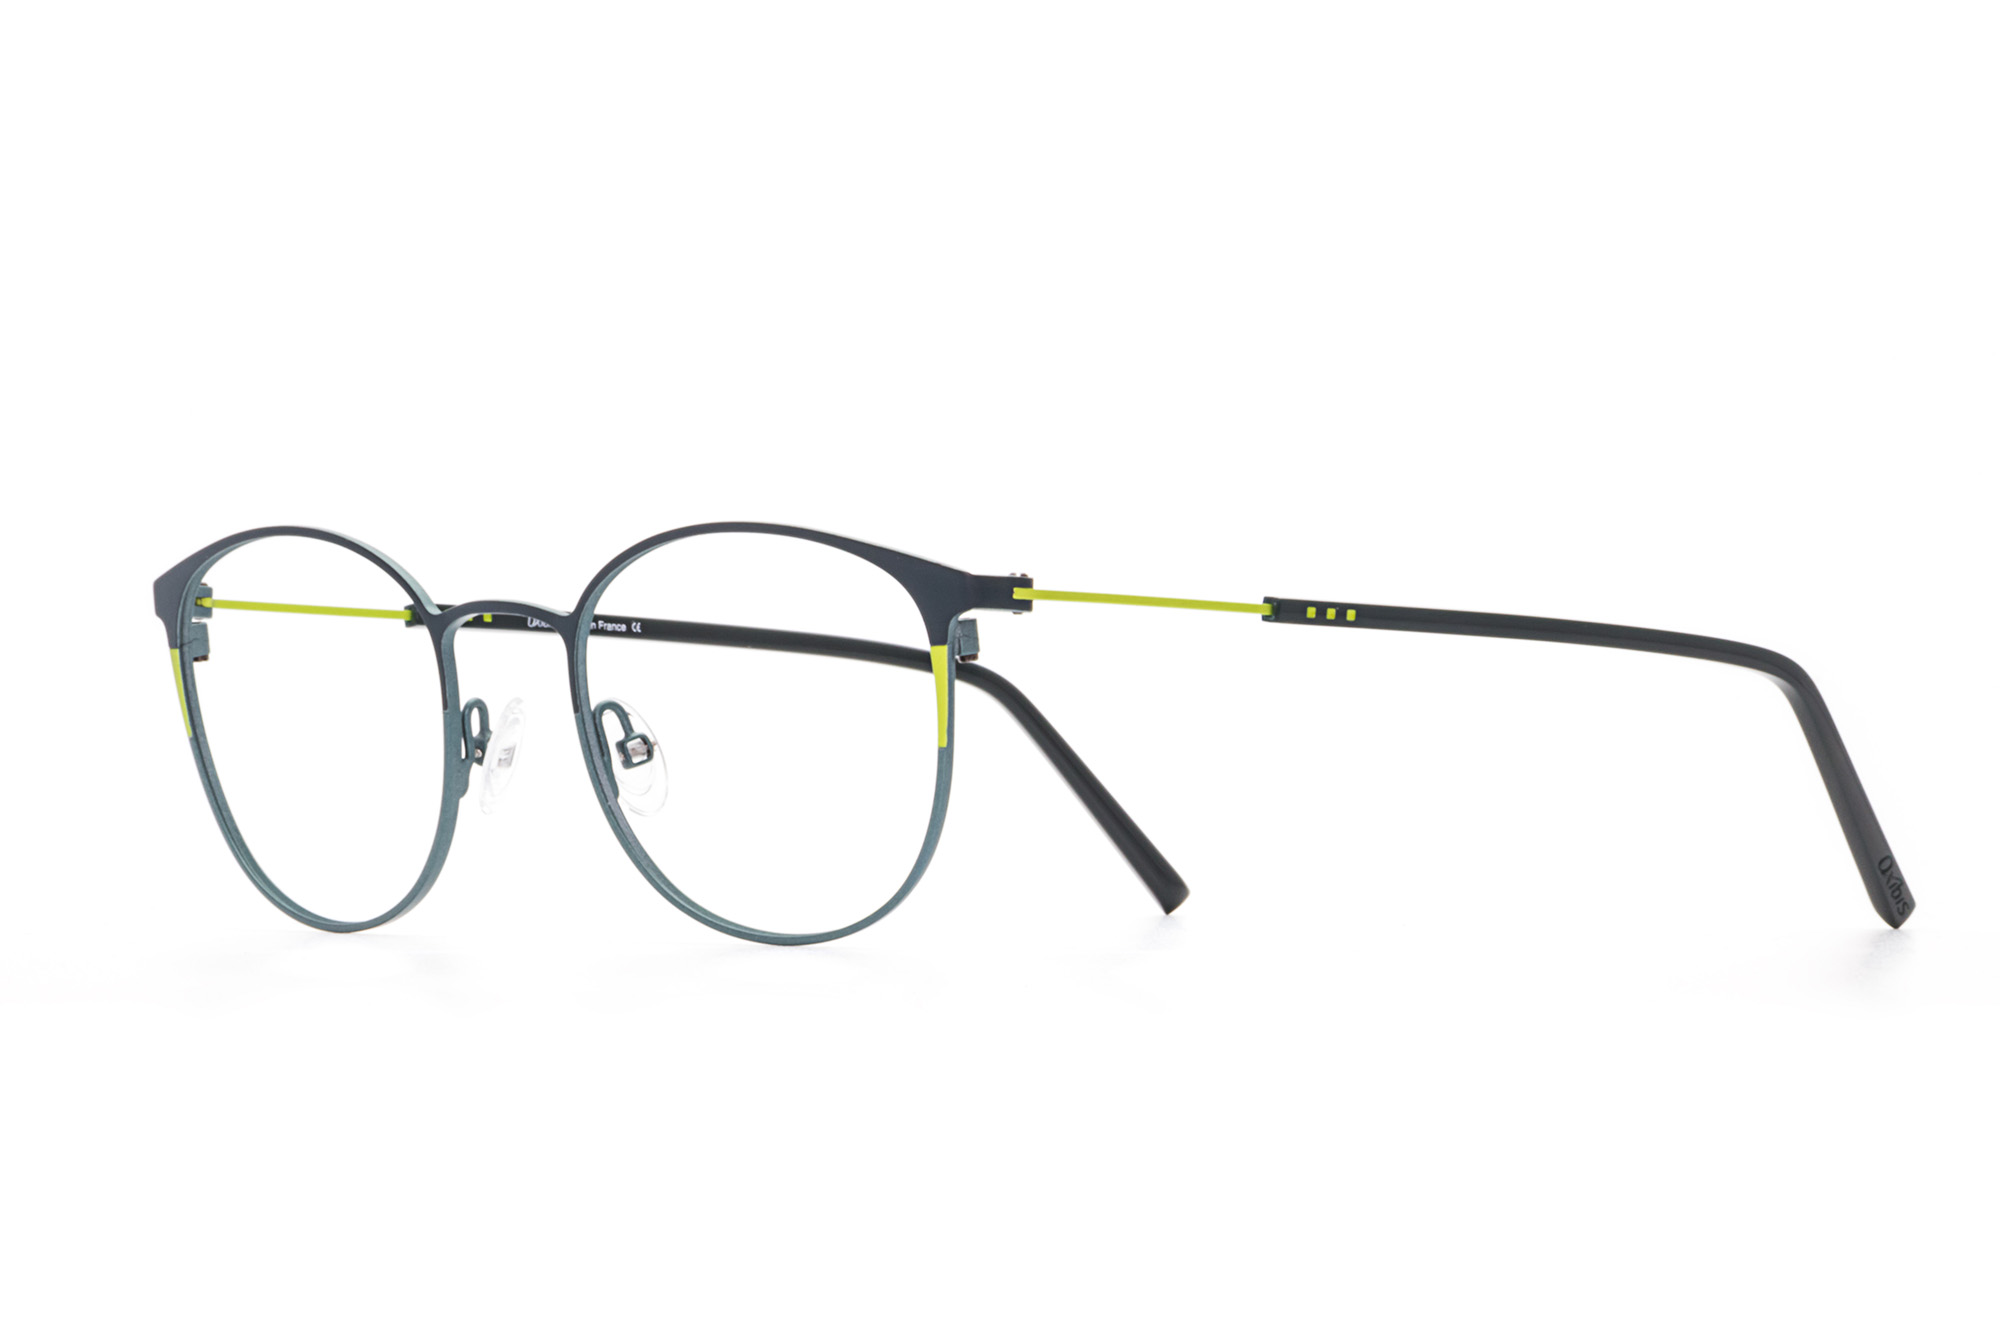 Kullanıma hazır optik tarzda işlenmiş camları ve optik uyumlu çerçevesiyle Oxibis Boost BO1C7 49 küçük ekartman mavi ve yeşil renkli yuvarlak model unisex gözlüğü optisyen veya gözlükçülerin sunacağı numarasız veya numaralı cam özelleştirmeleriyle size en yakın gözlükçüden satın alabilirsiniz.